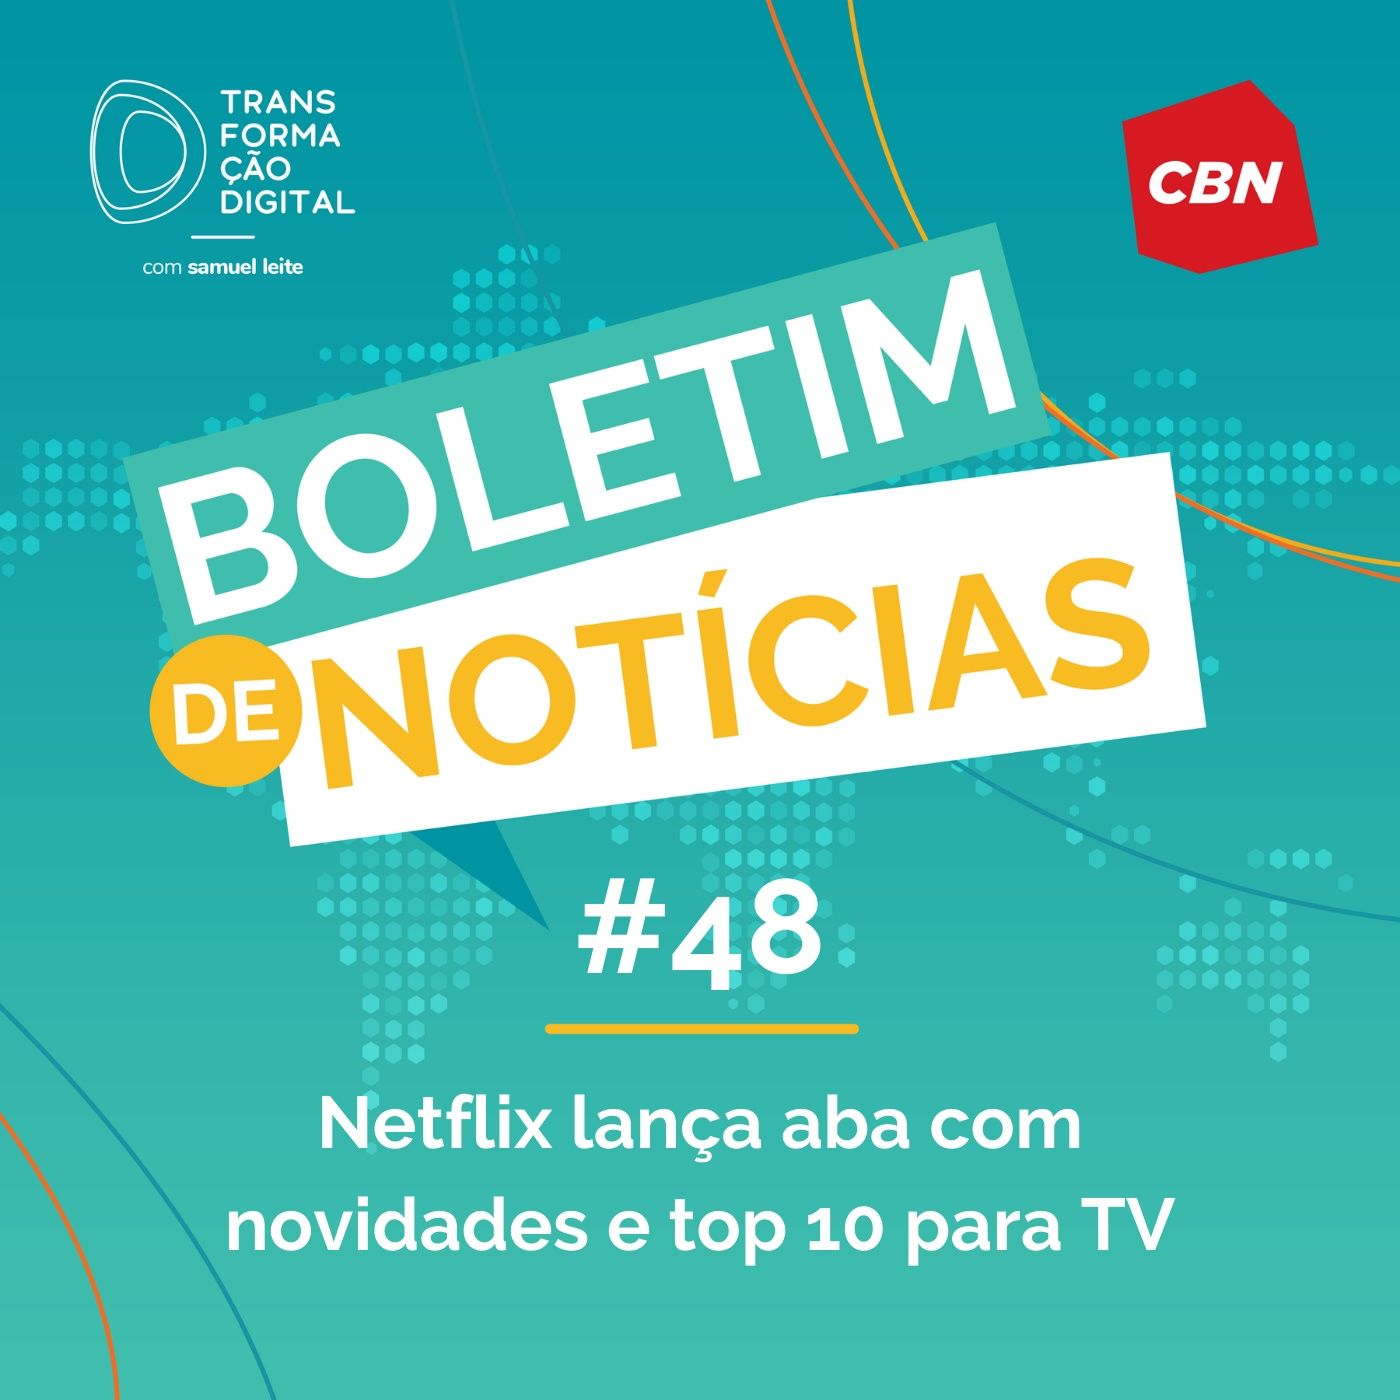 Transformação Digital CBN - Boletim de Notícias #48 - Netflix lança aba com novidades e top 10 para TV